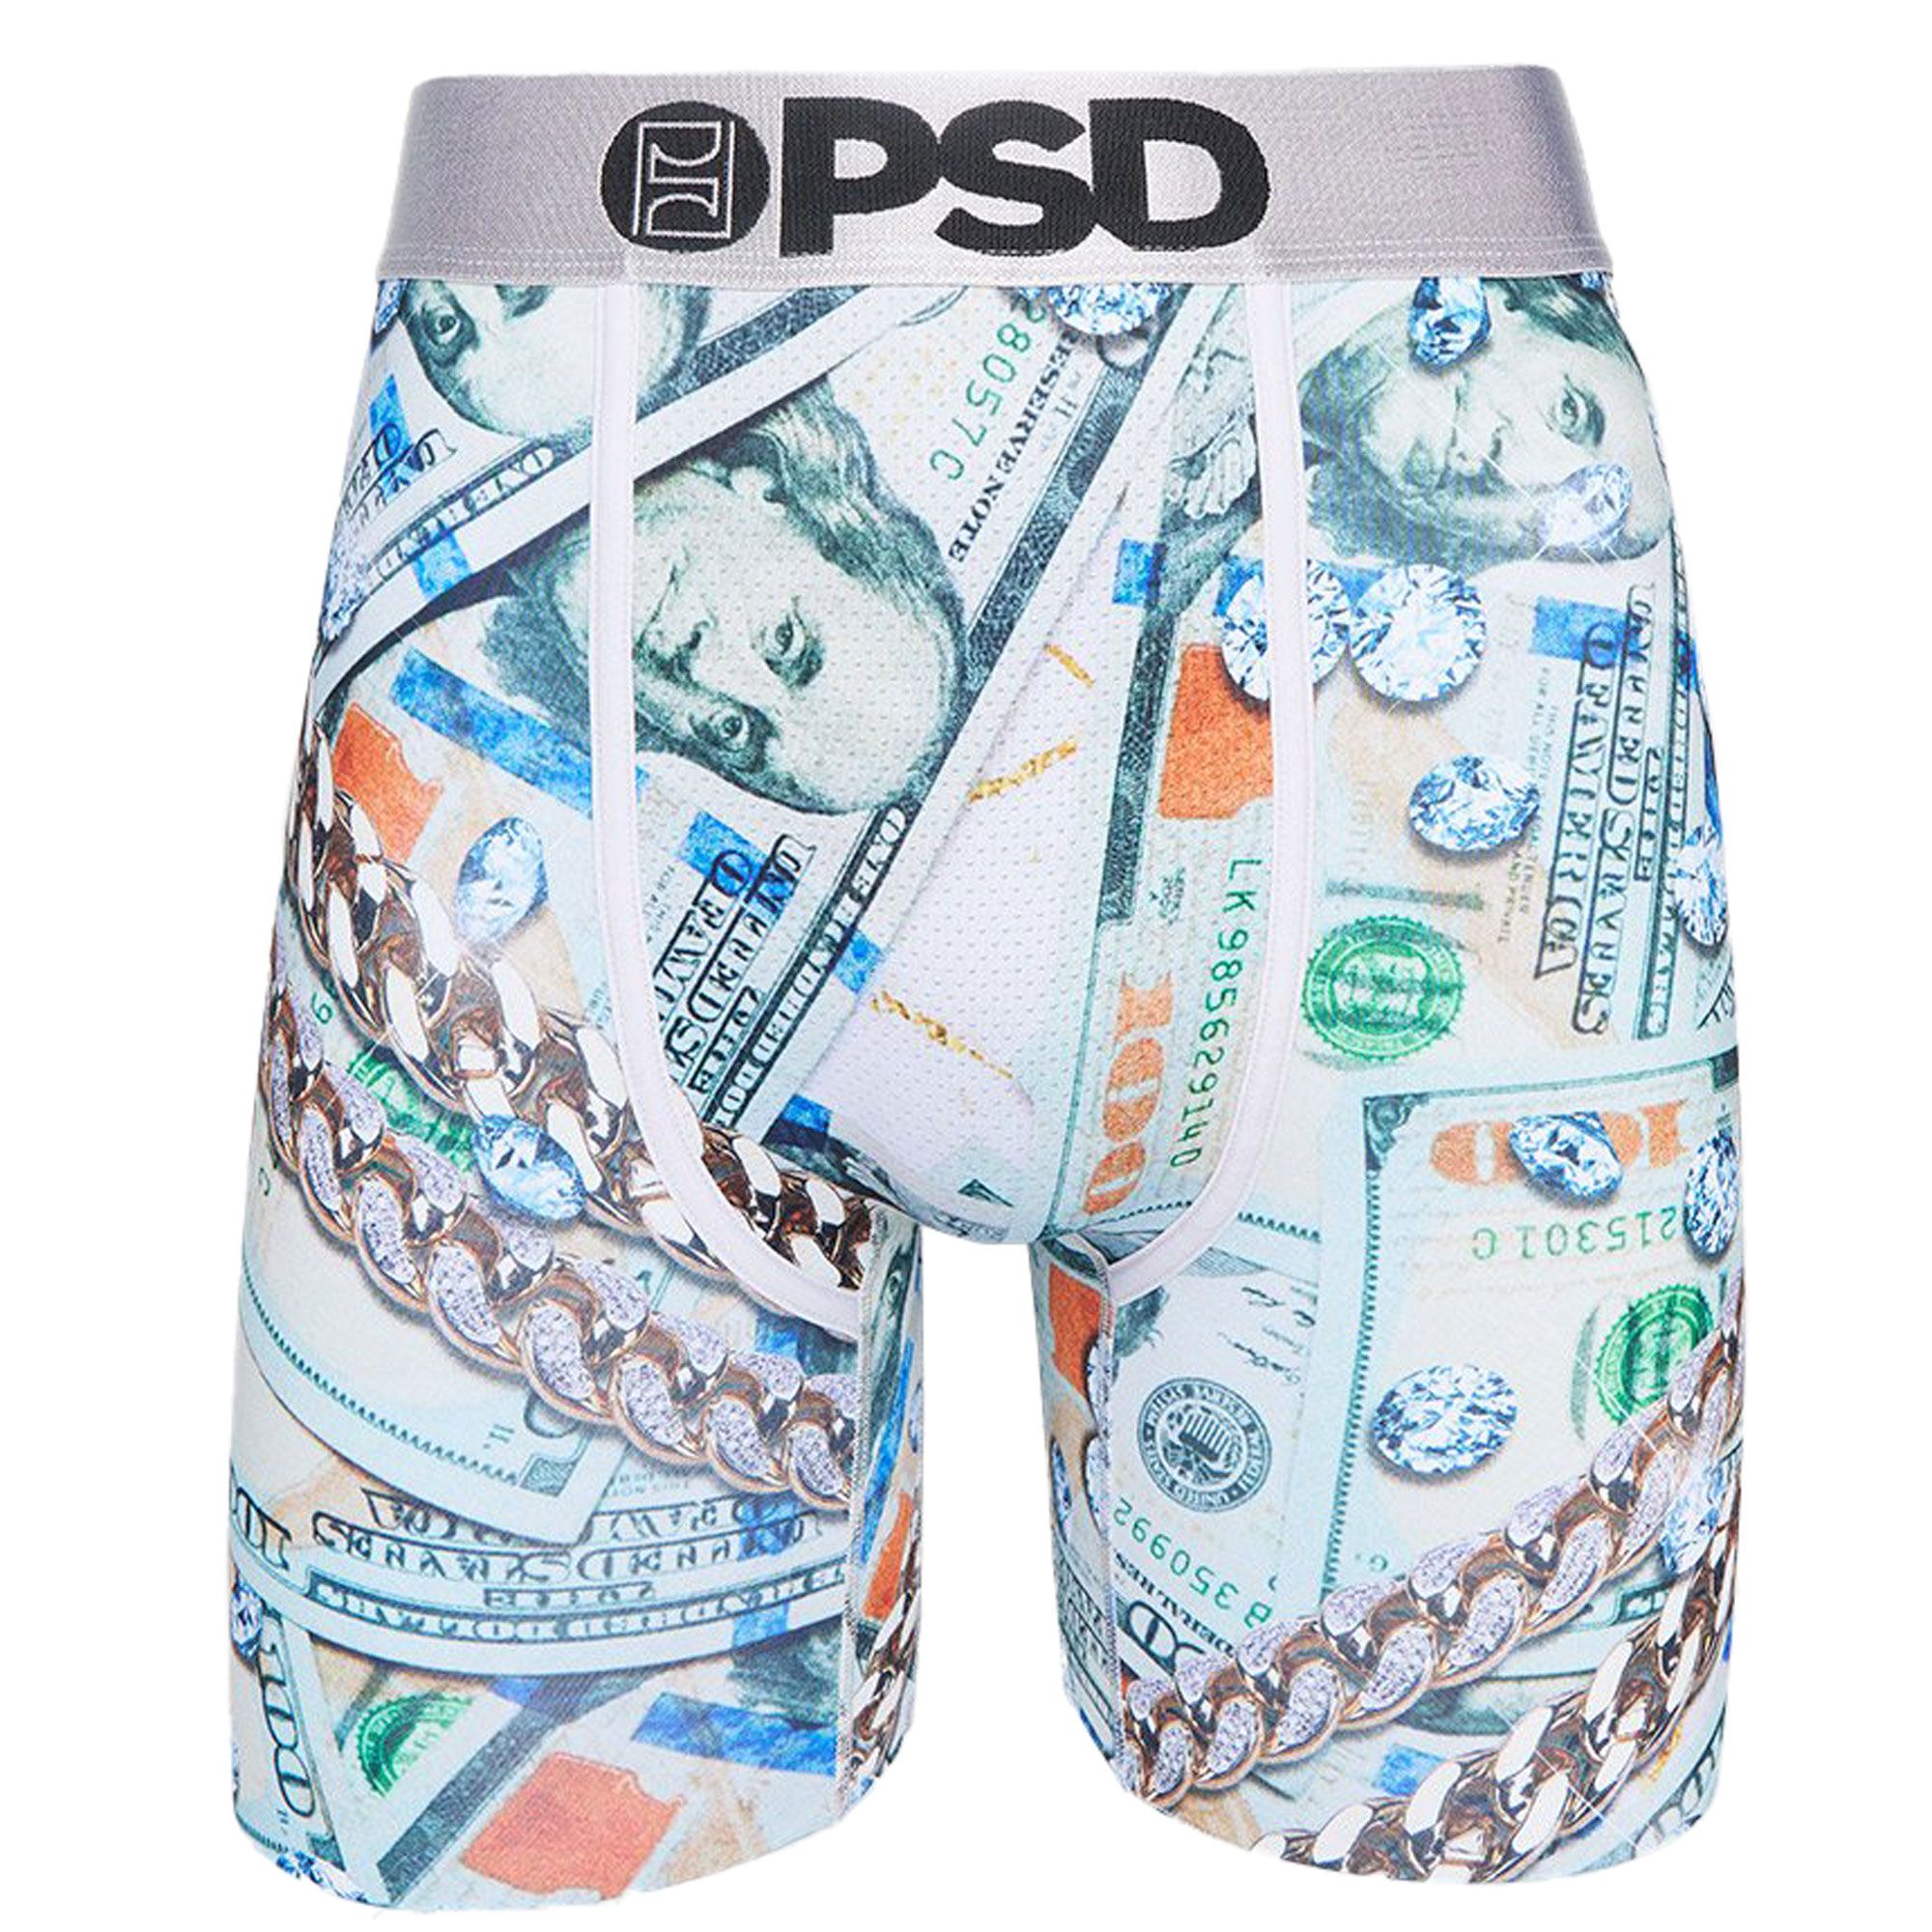 MONEY GAME Sports Bra - PSD Underwear